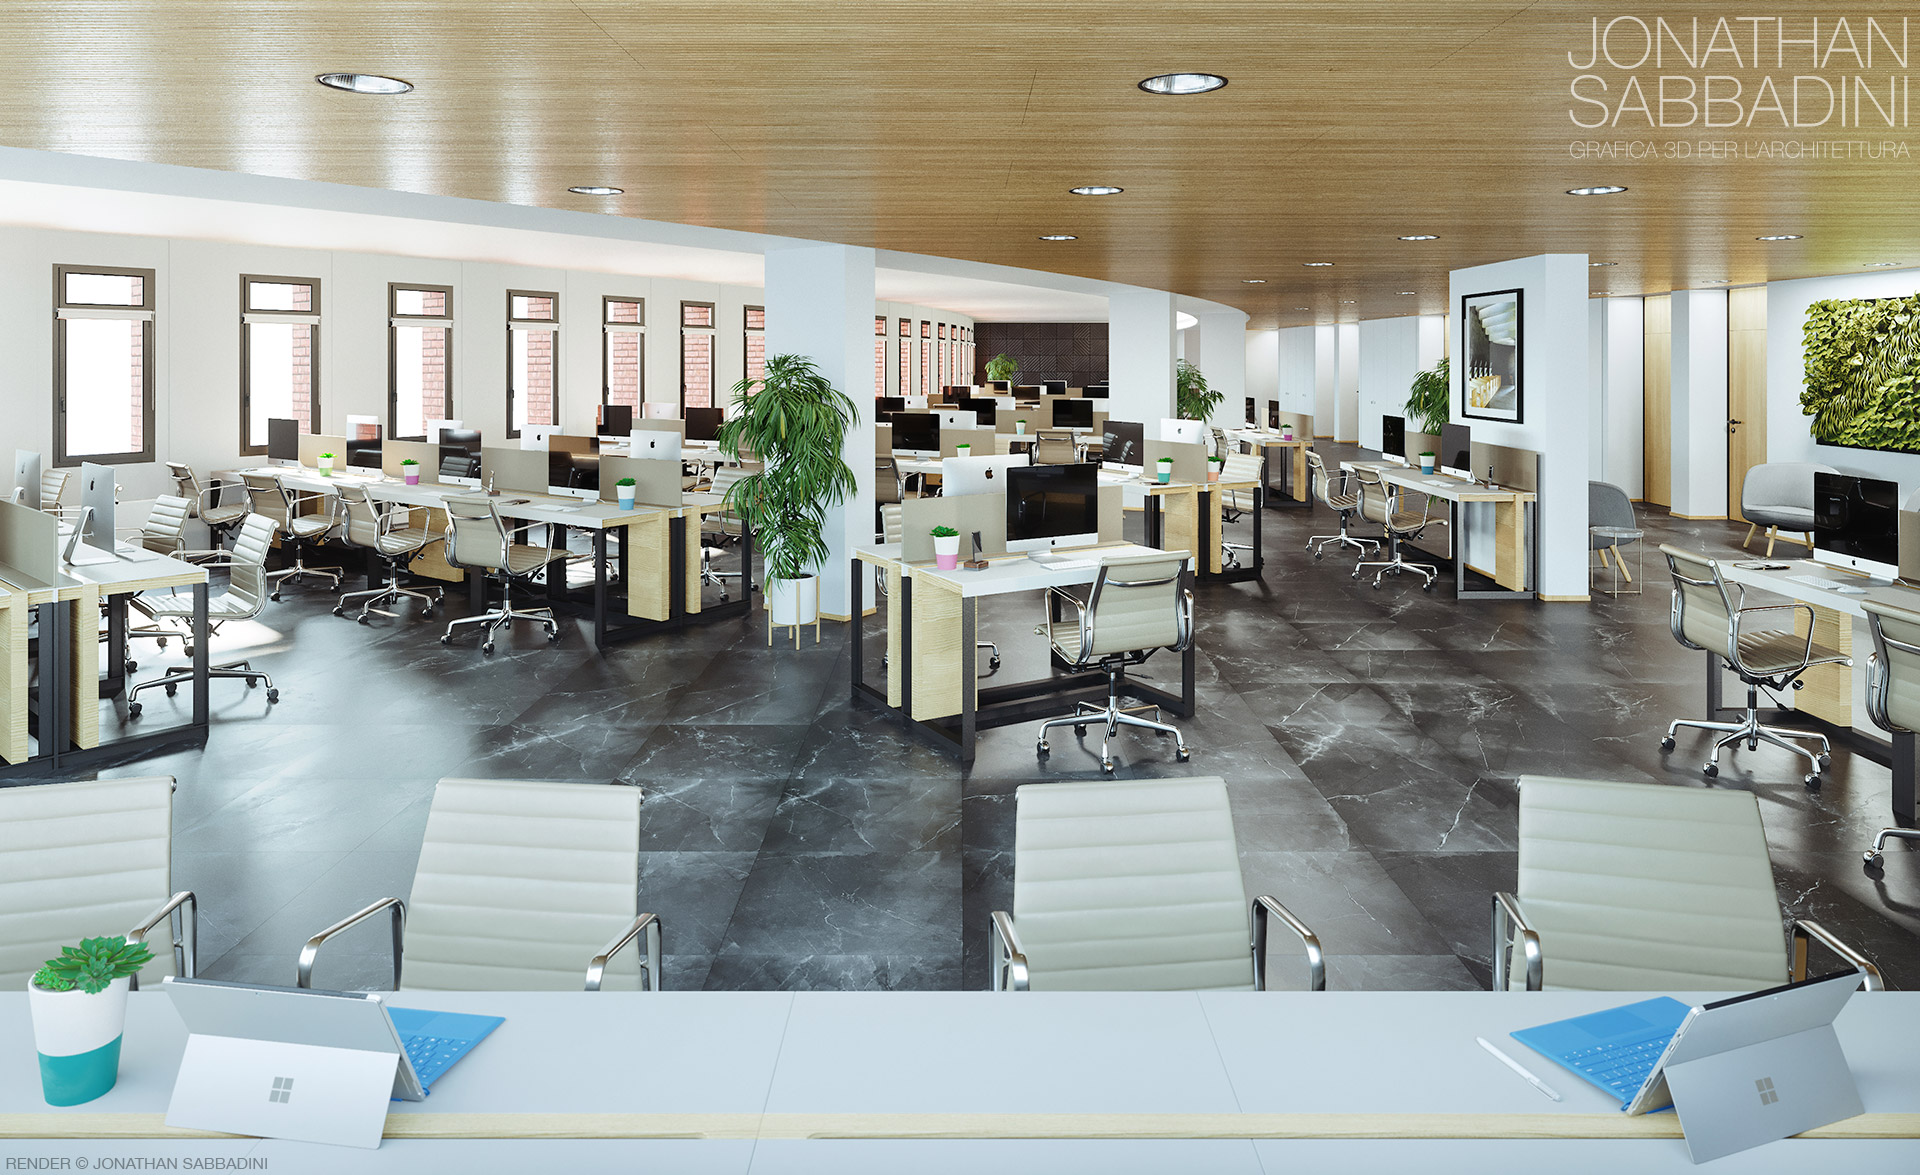 3D ufficio prestigioso Business Center Bellinzona - rendering Jonathan Sabbadini